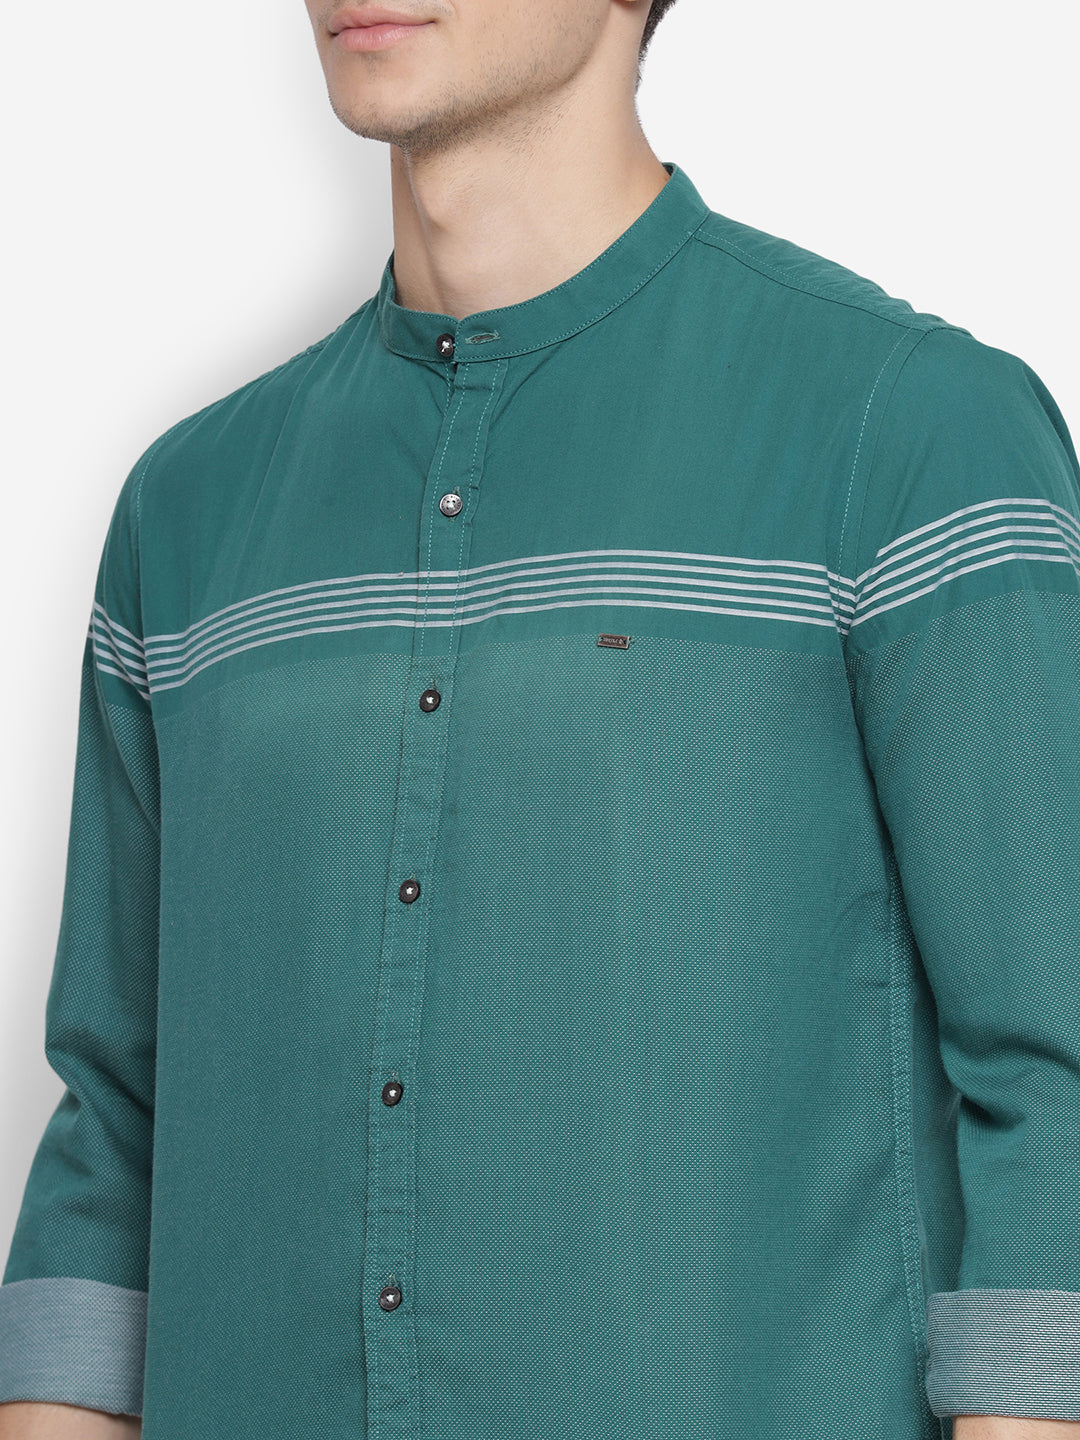 Self Design Green Slim Fit Casual Shirt